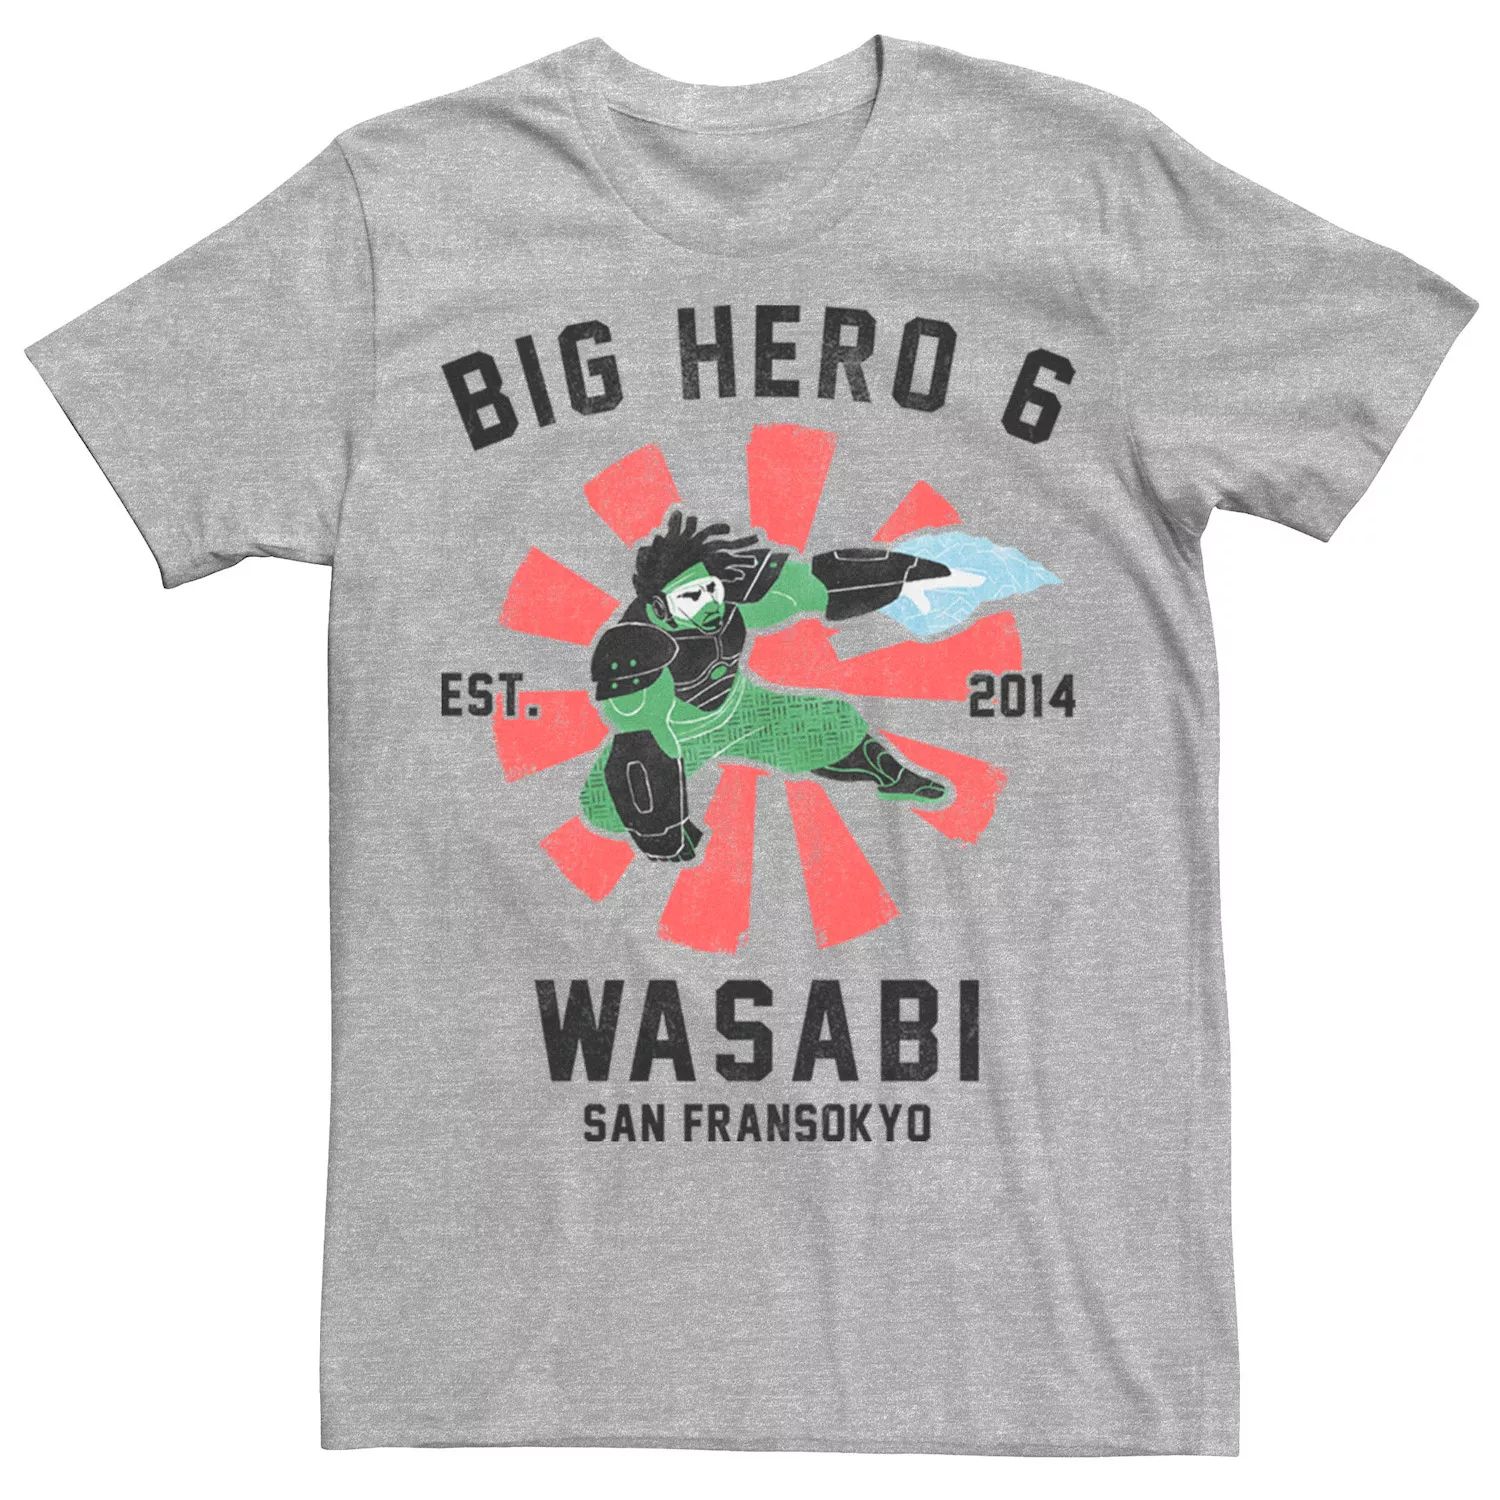 Мужская футболка с плакатом Big Hero 6 Wasabi Disney